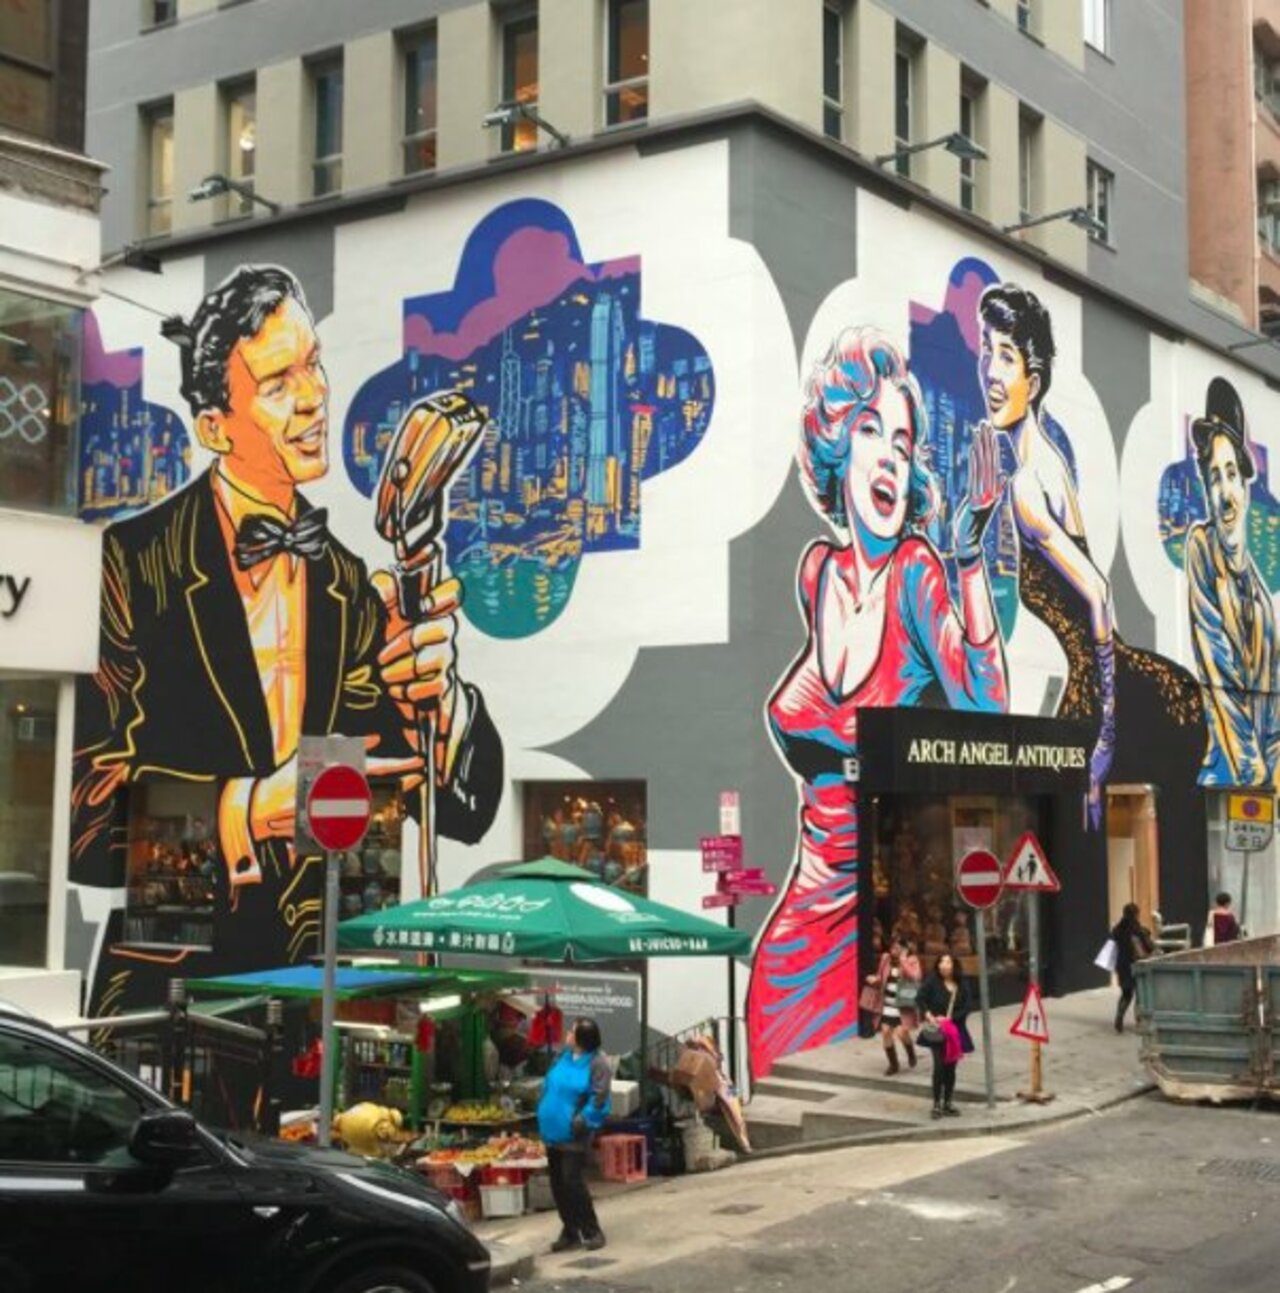 Nice pic!  MT @BradJillTravels Yes - #HongKong even has a decent #Streetart scene! #culture #heritage #travel #art #graffiti #travelart #DiscoverHongKong https://t.co/Cnb88r1mg7